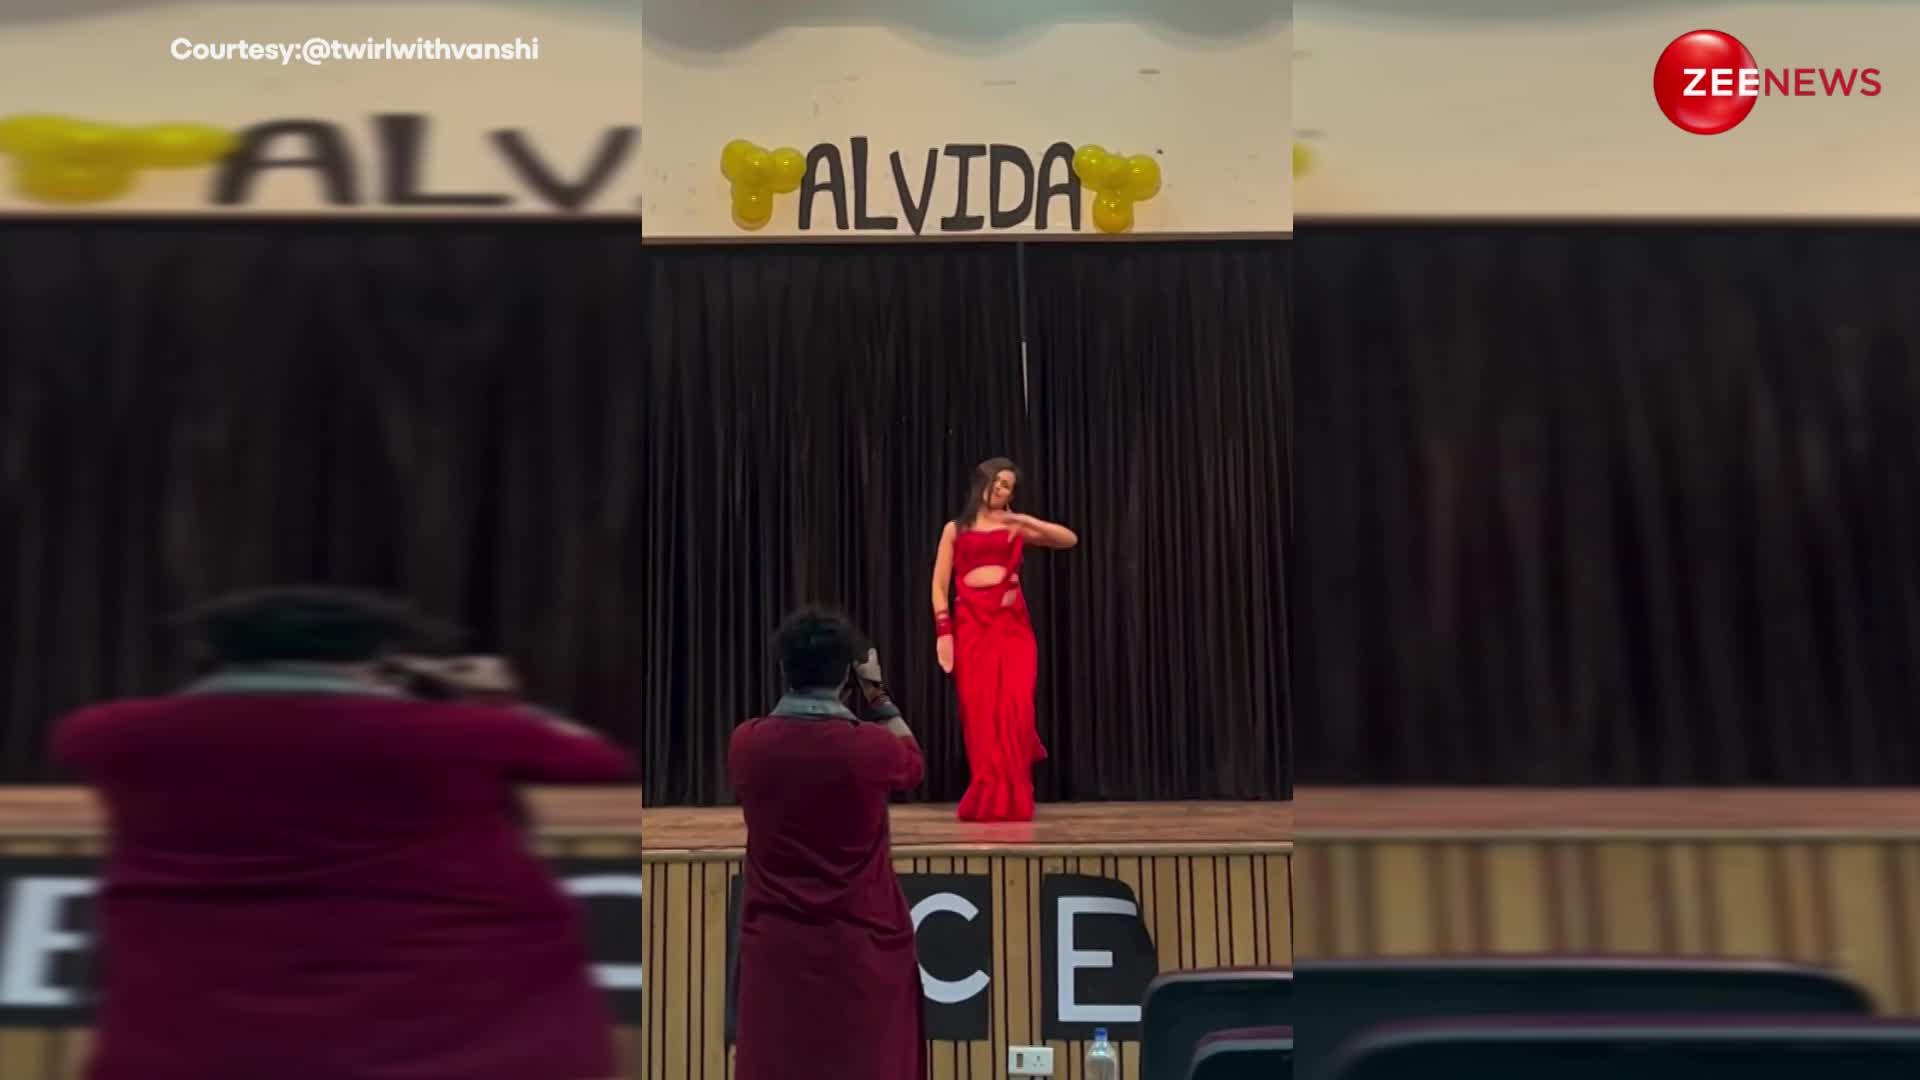 चटक लाल साड़ी पहन कॉलेज की लड़की ने 'शरारा शरारा' गाने पर किया धमाकेदार डांस, फेयरवेल वीडियो हुआ वायरल